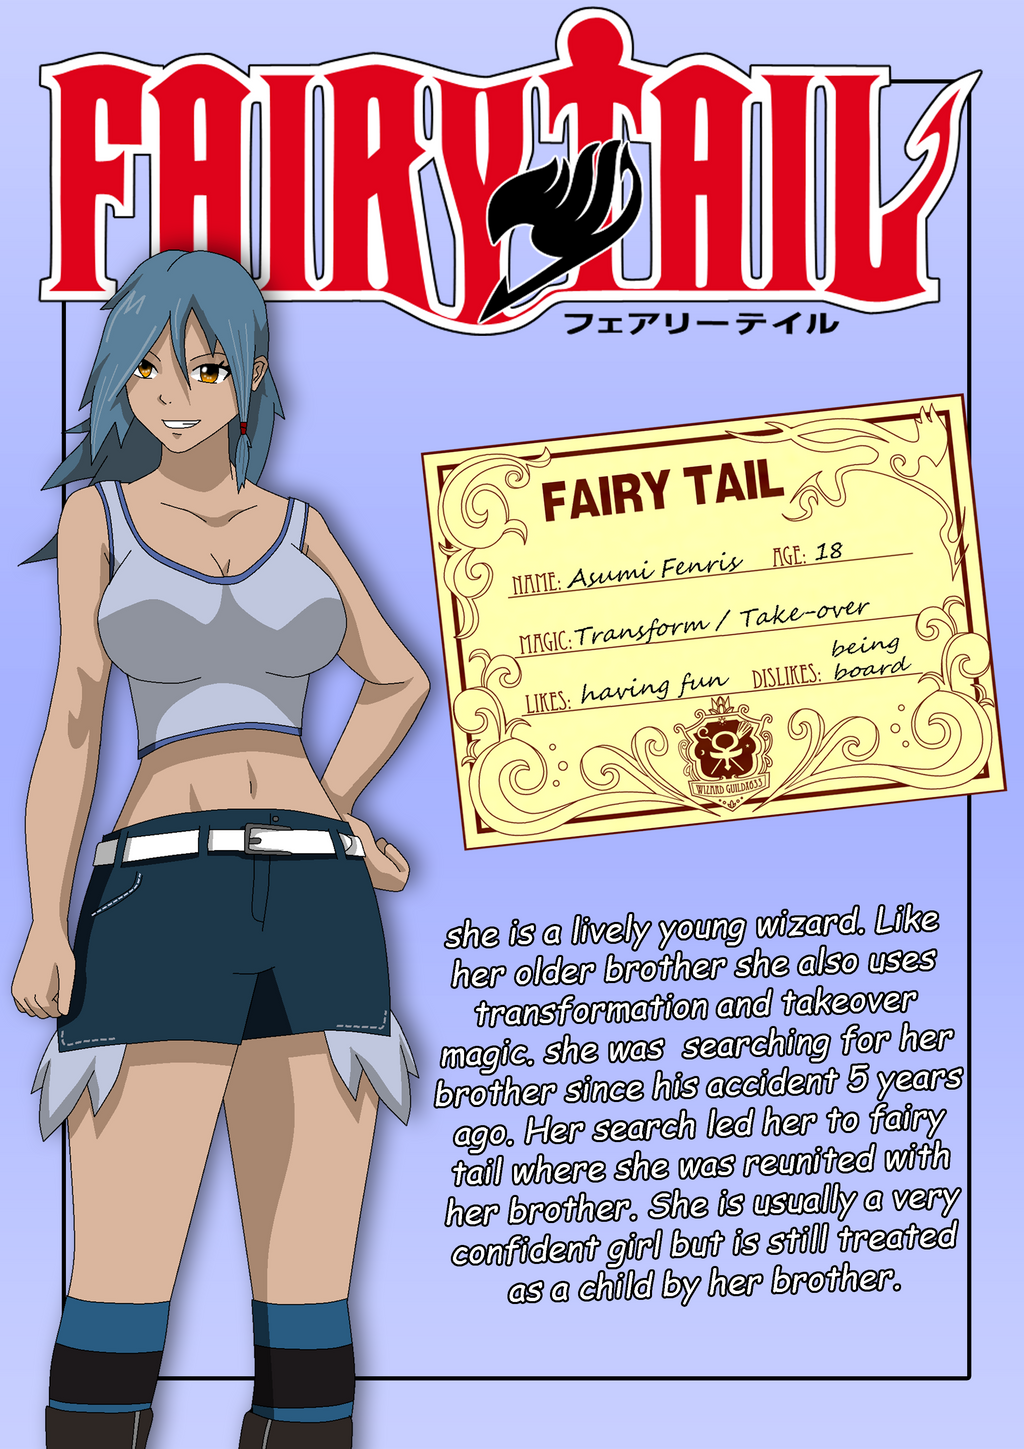 Fairy_Tail_OC_Asumi_Fenris by Matt33oc on DeviantArt